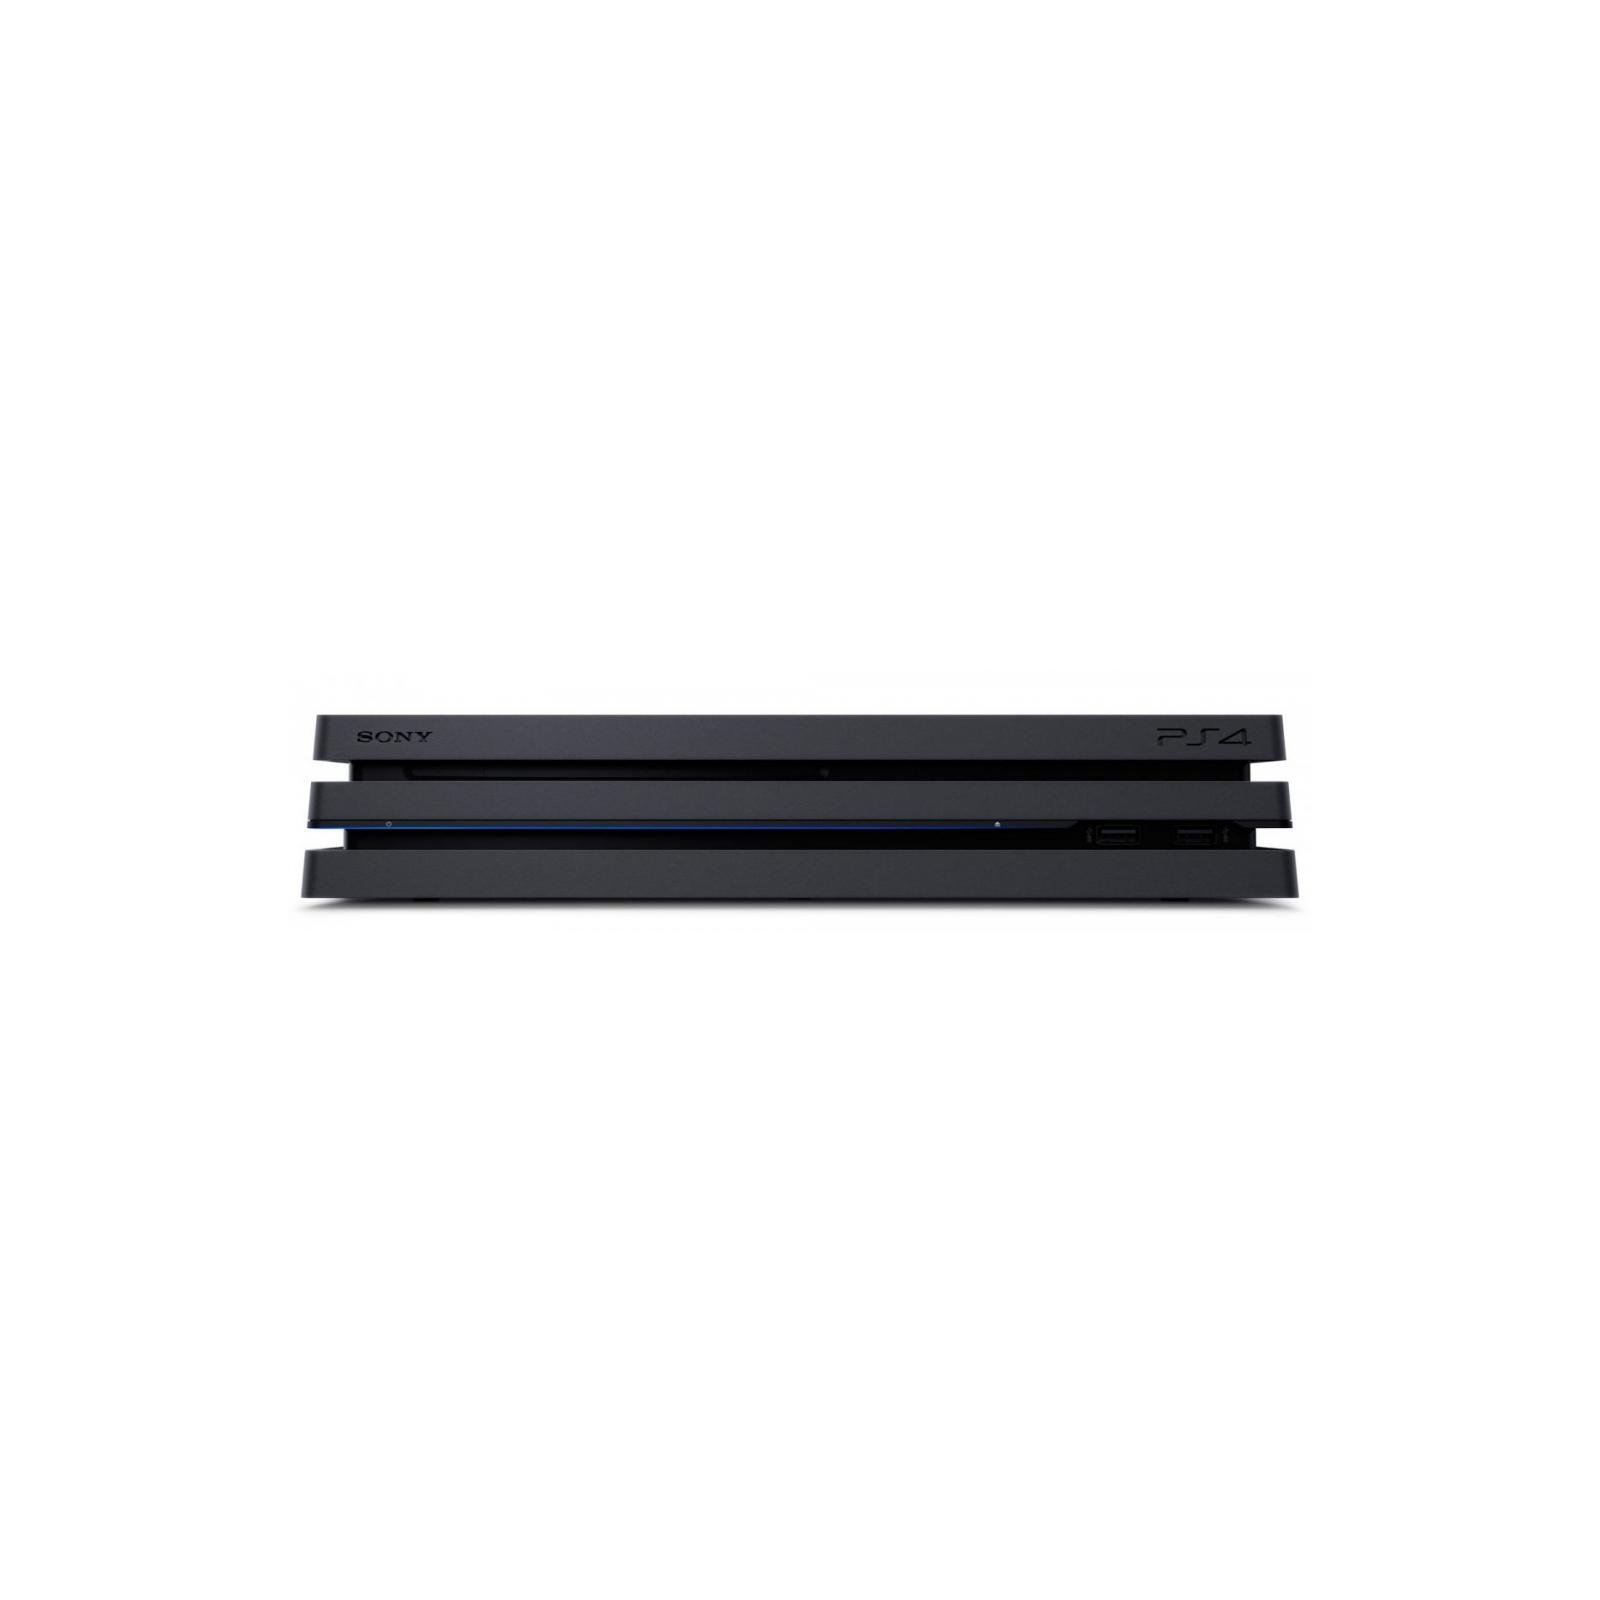 Игровая консоль Sony PlayStation 4 Pro 1Tb Black (9937562) изображение 5